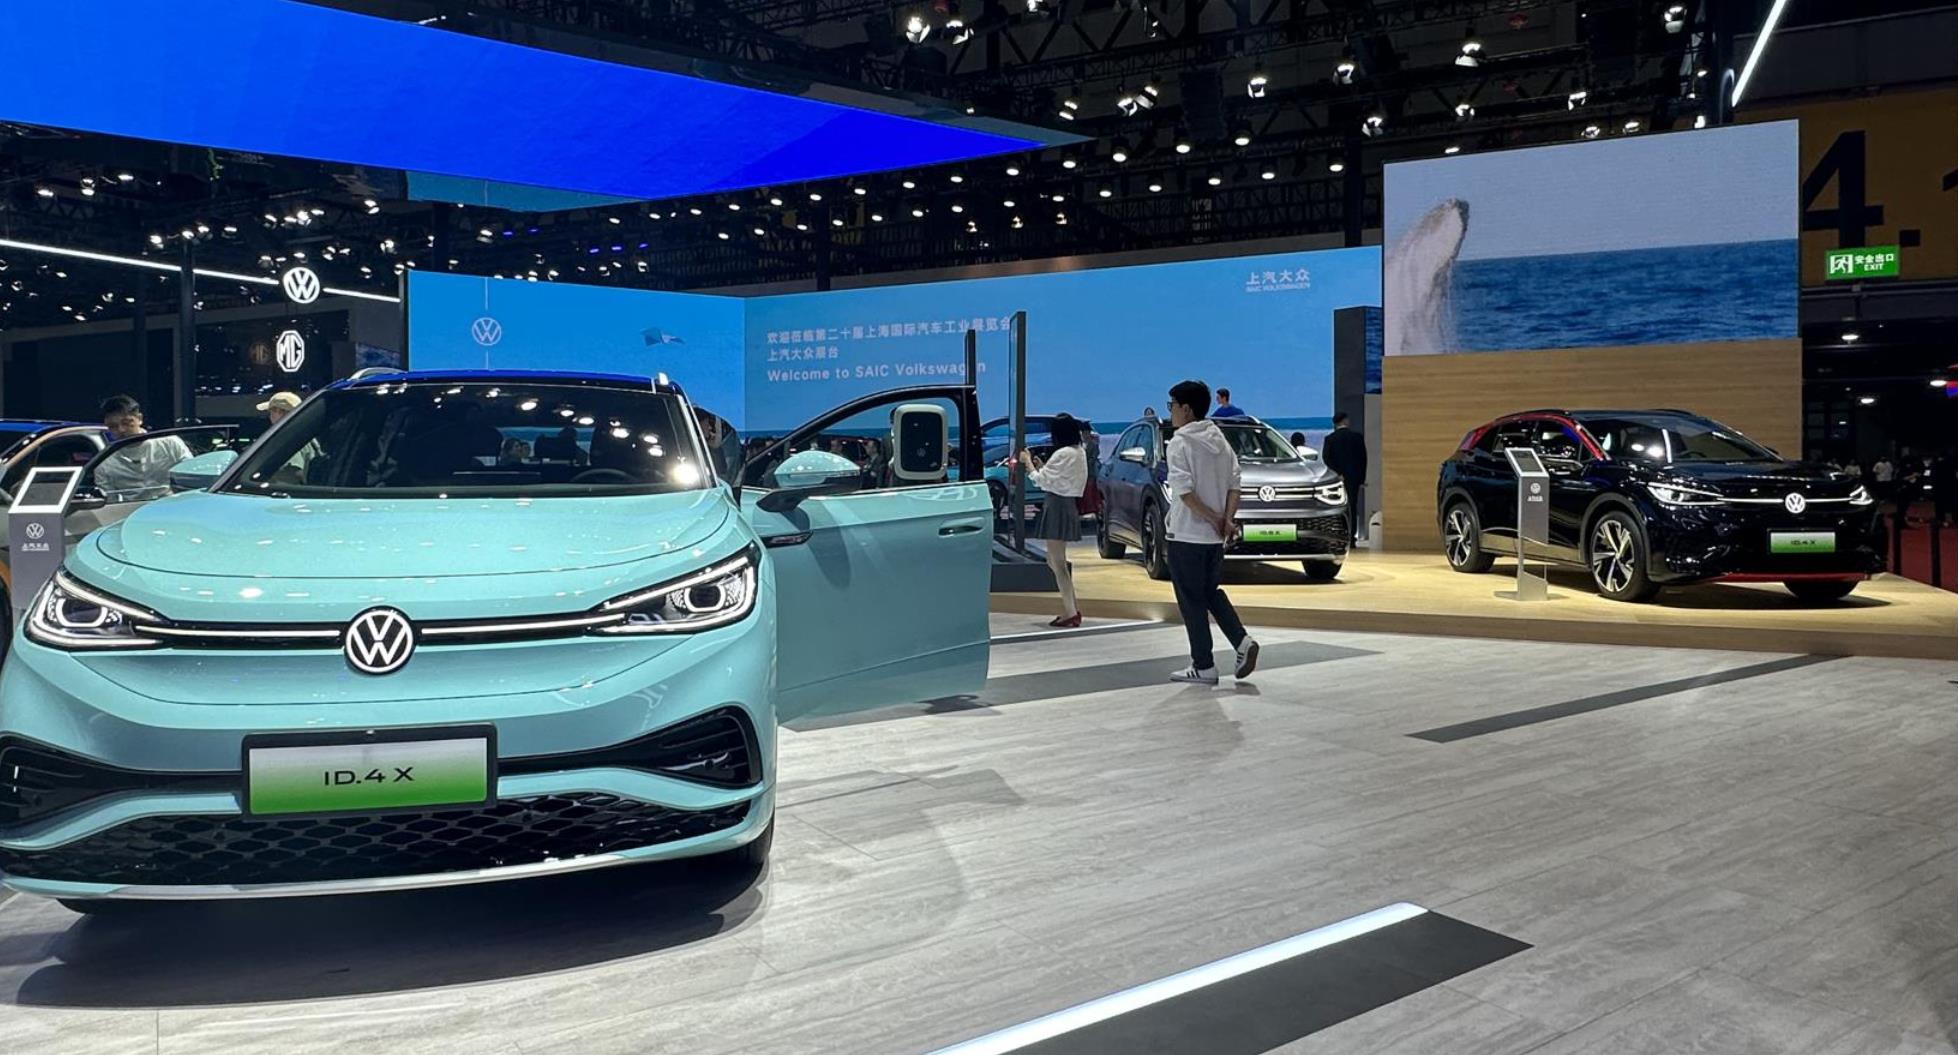 小鹏与大众合作开发的大众汽车品牌新车型将于2026年在合肥投产